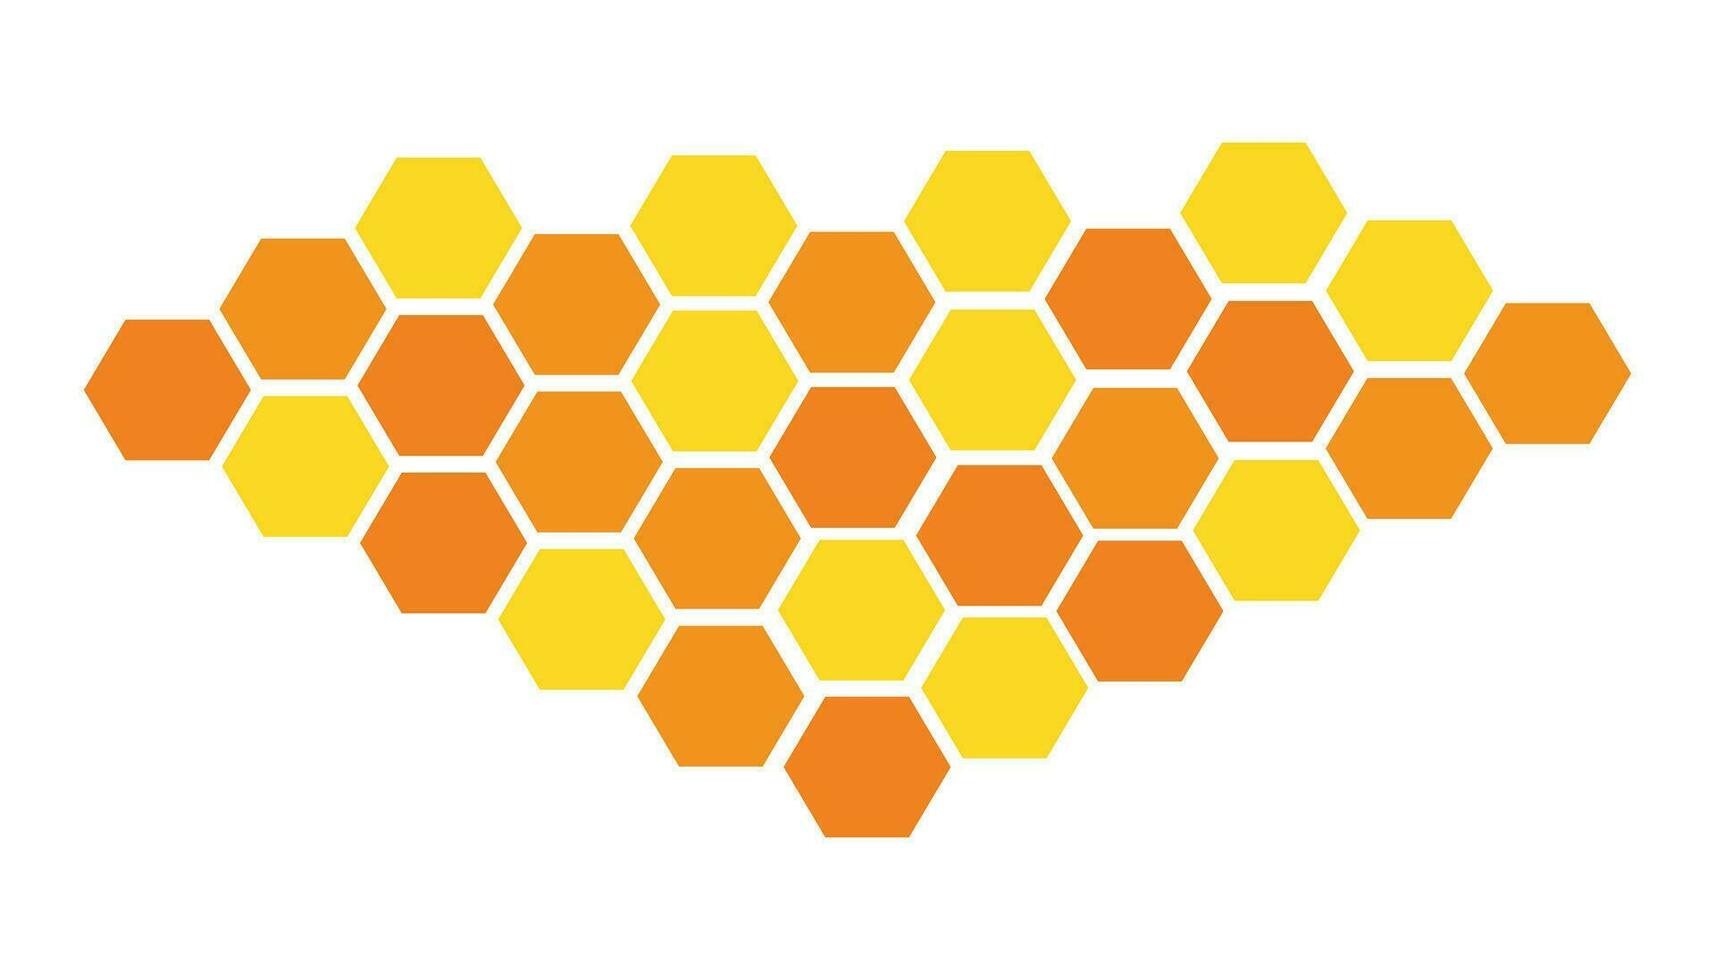 vaxkaka sexhörning isolerat på vit bakgrund. vektor illustration. gul och orange sexhörning mönster se tycka om vaxkaka